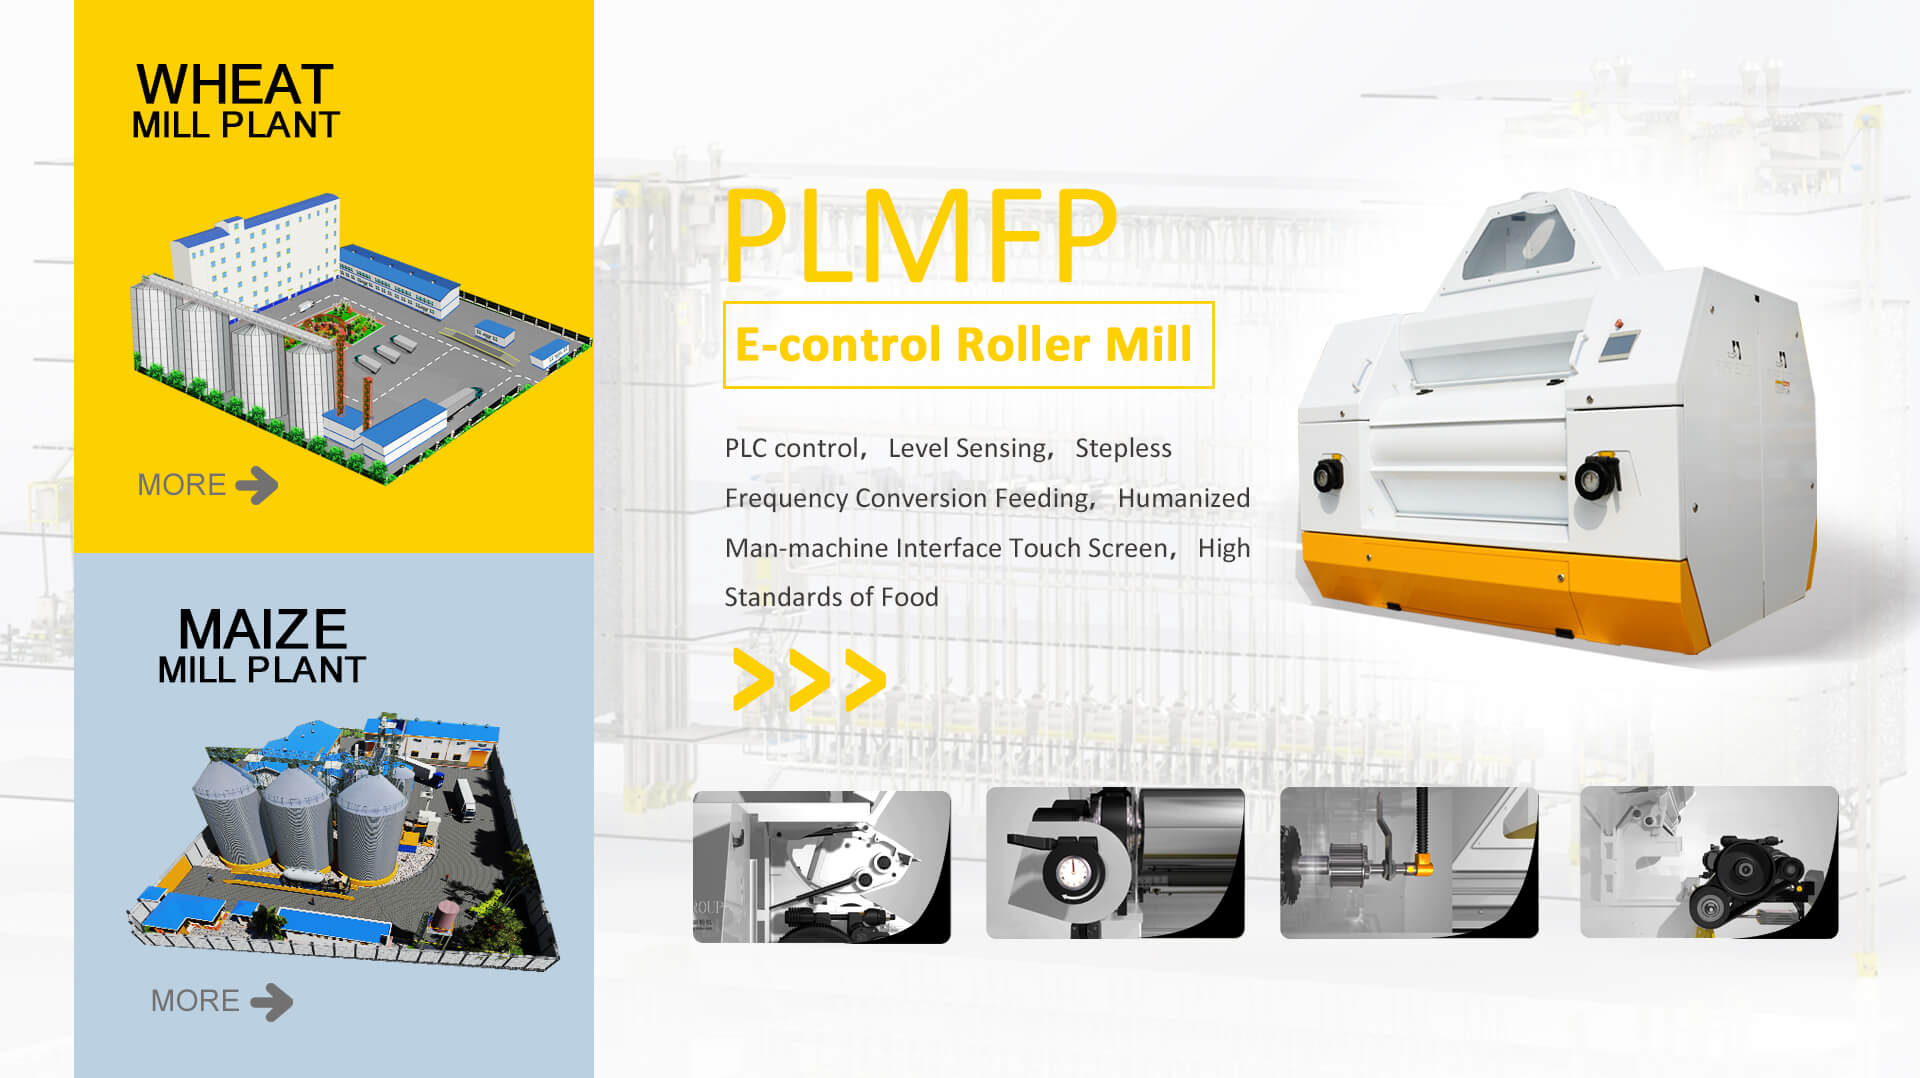 PLMFP E-control Roller Mill